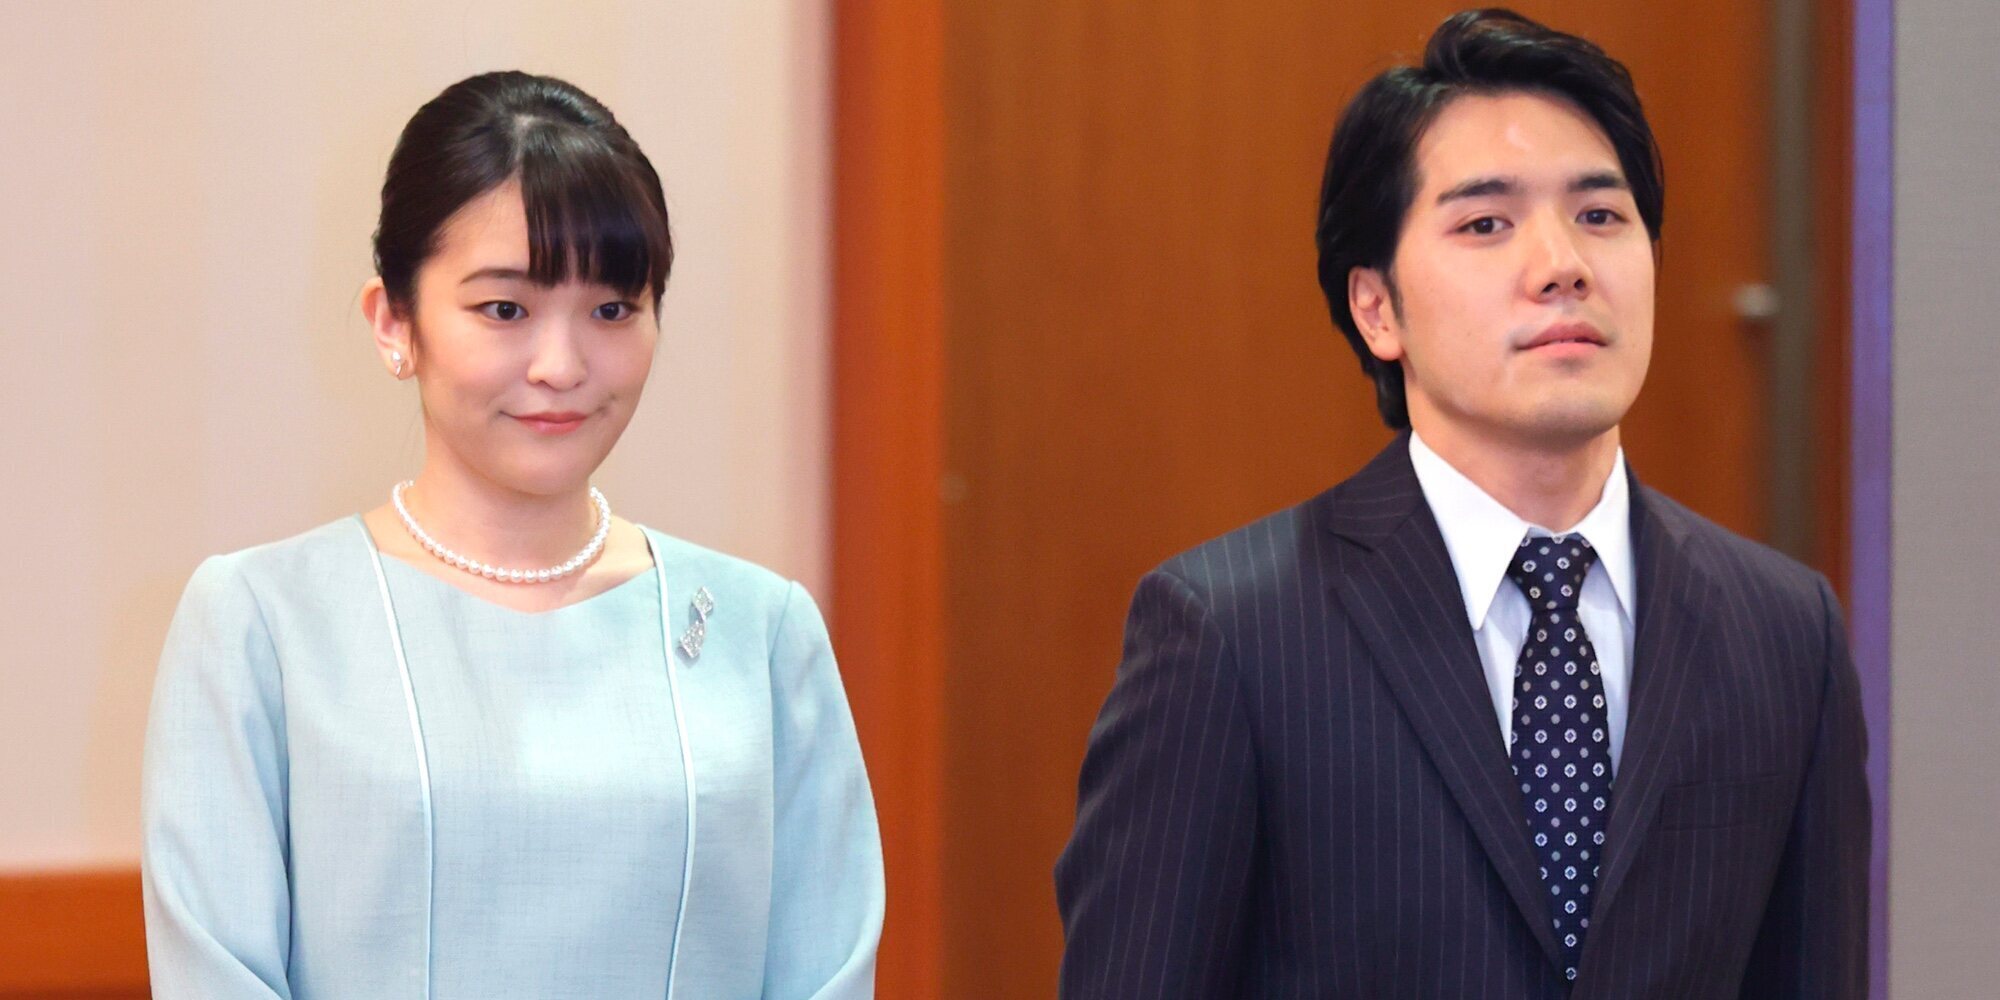 La sencilla vida que espera a Mako de Japón y Kei Komuro en Nueva York tras su boda